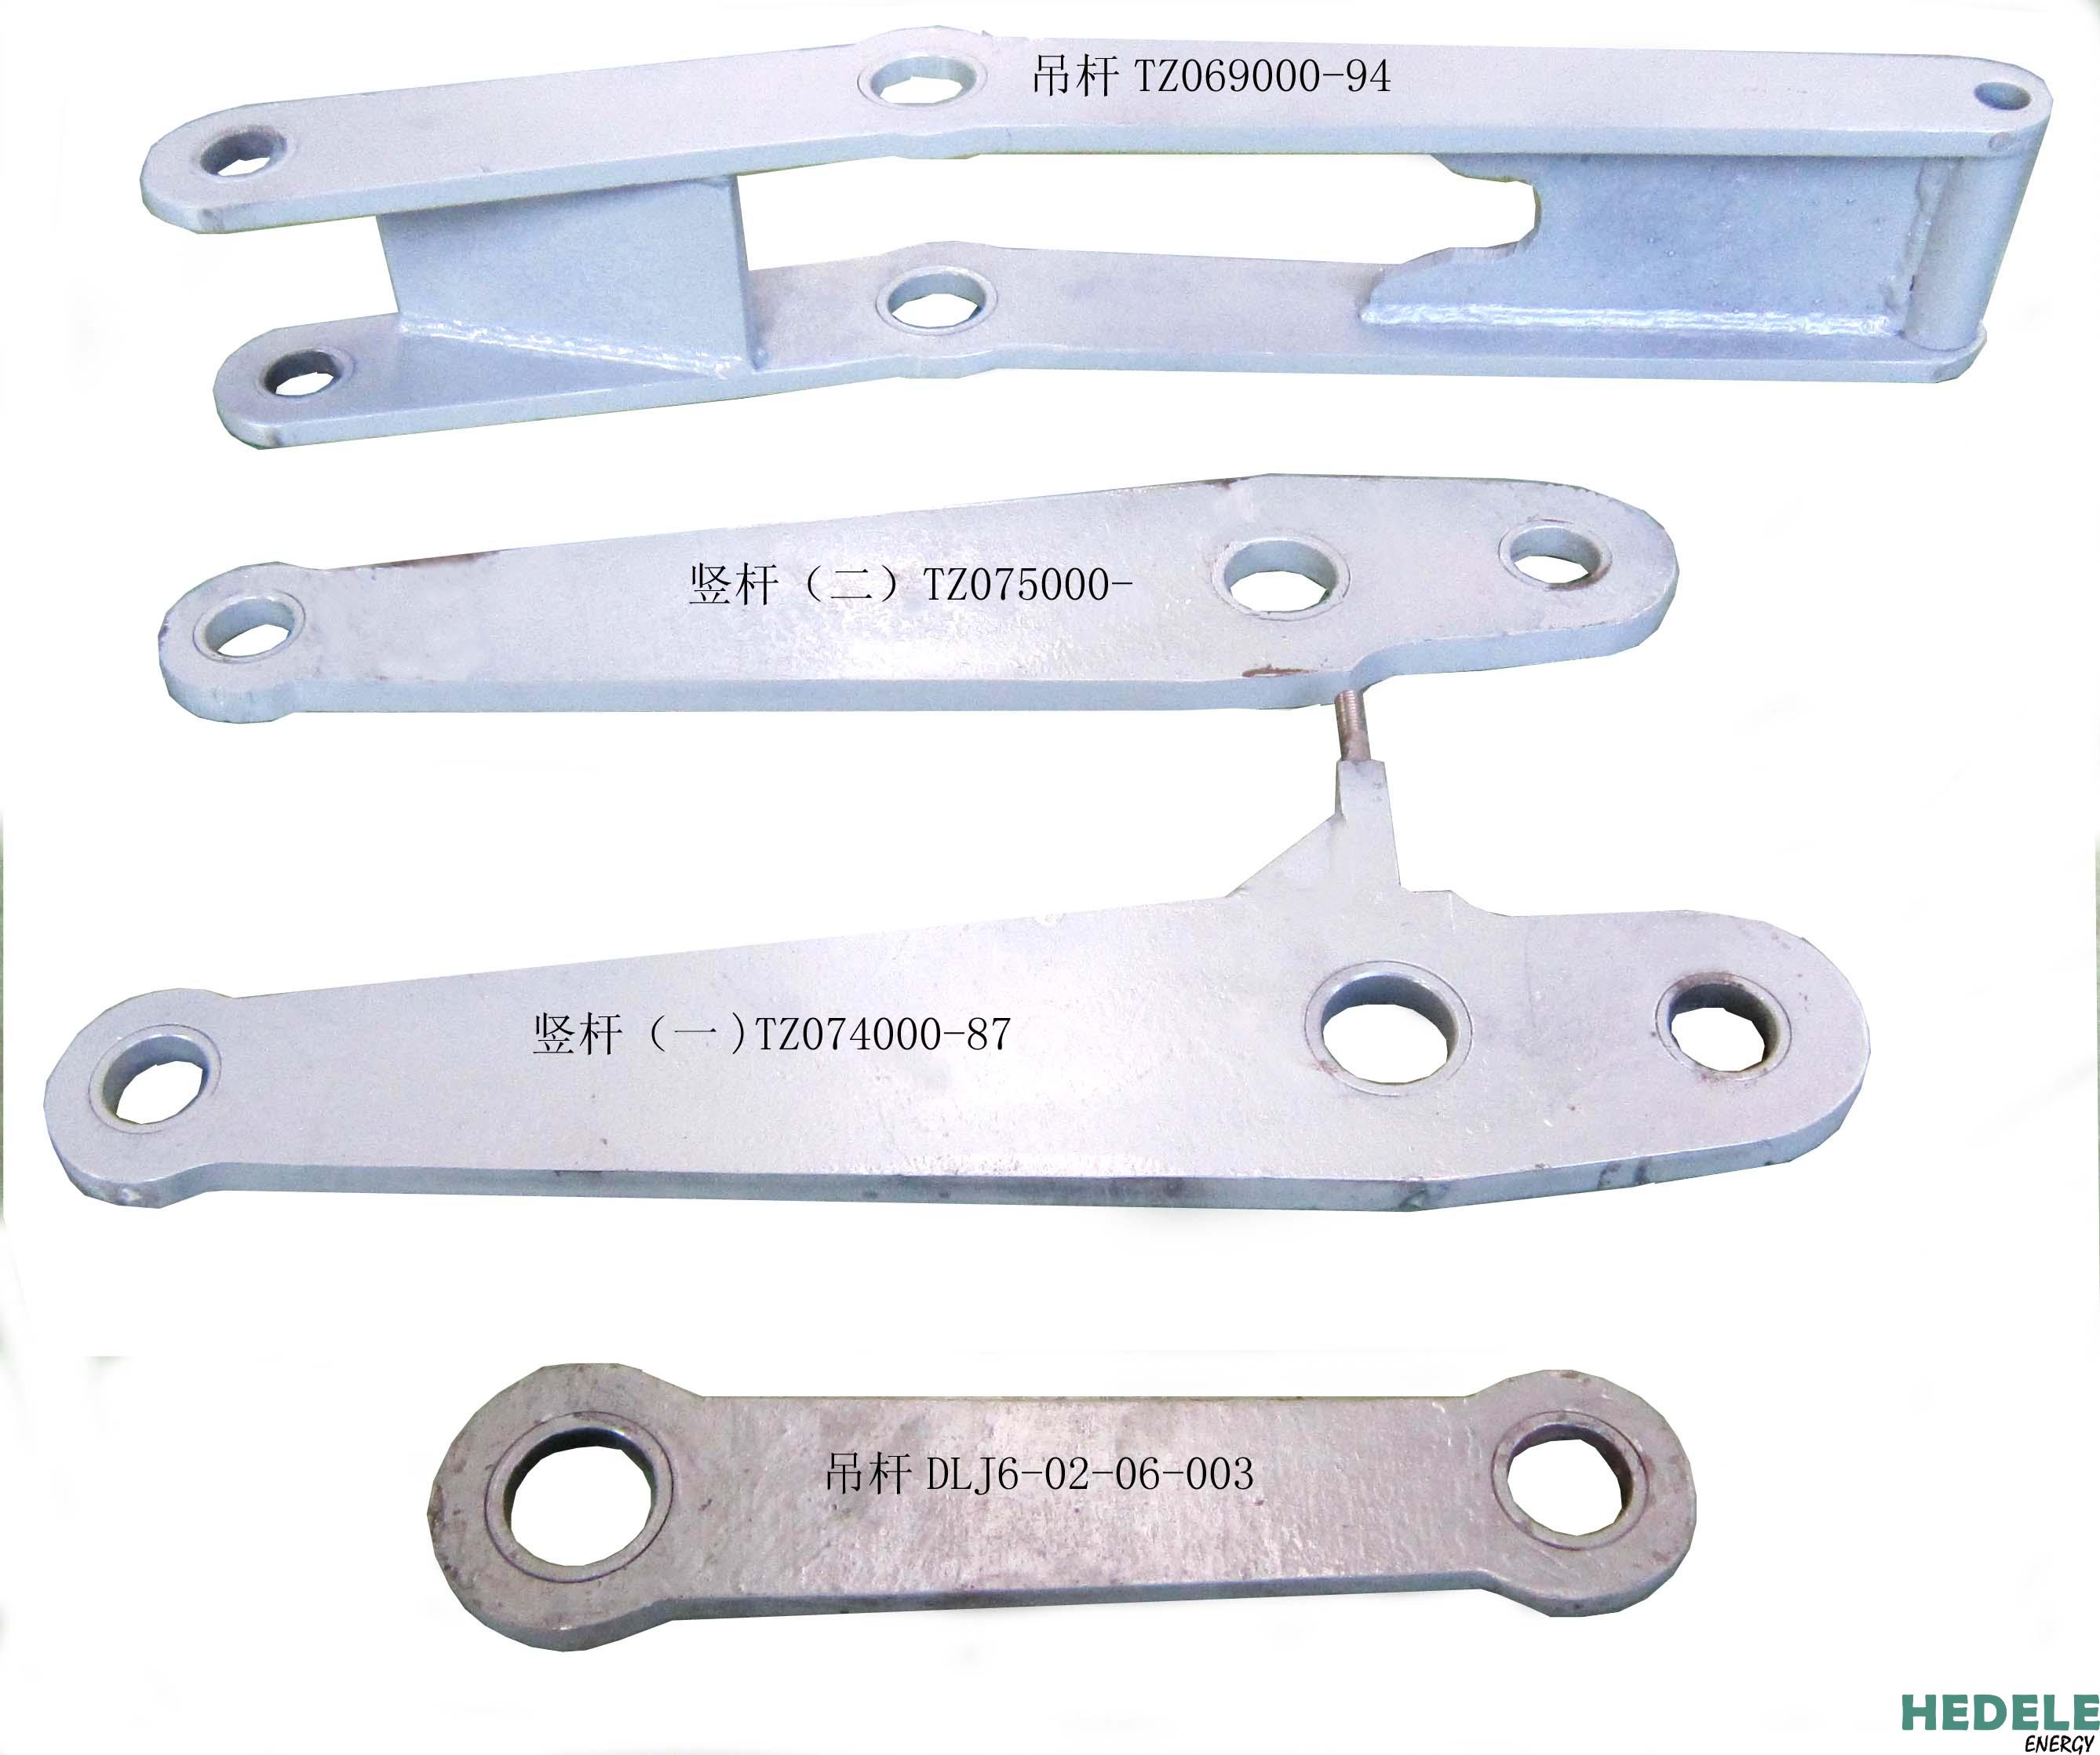 Suspender tz06900-94; Vertical rod (II) tz075000; Vertical rod (I) tz07400-87; Boom dlj6-02-06-003